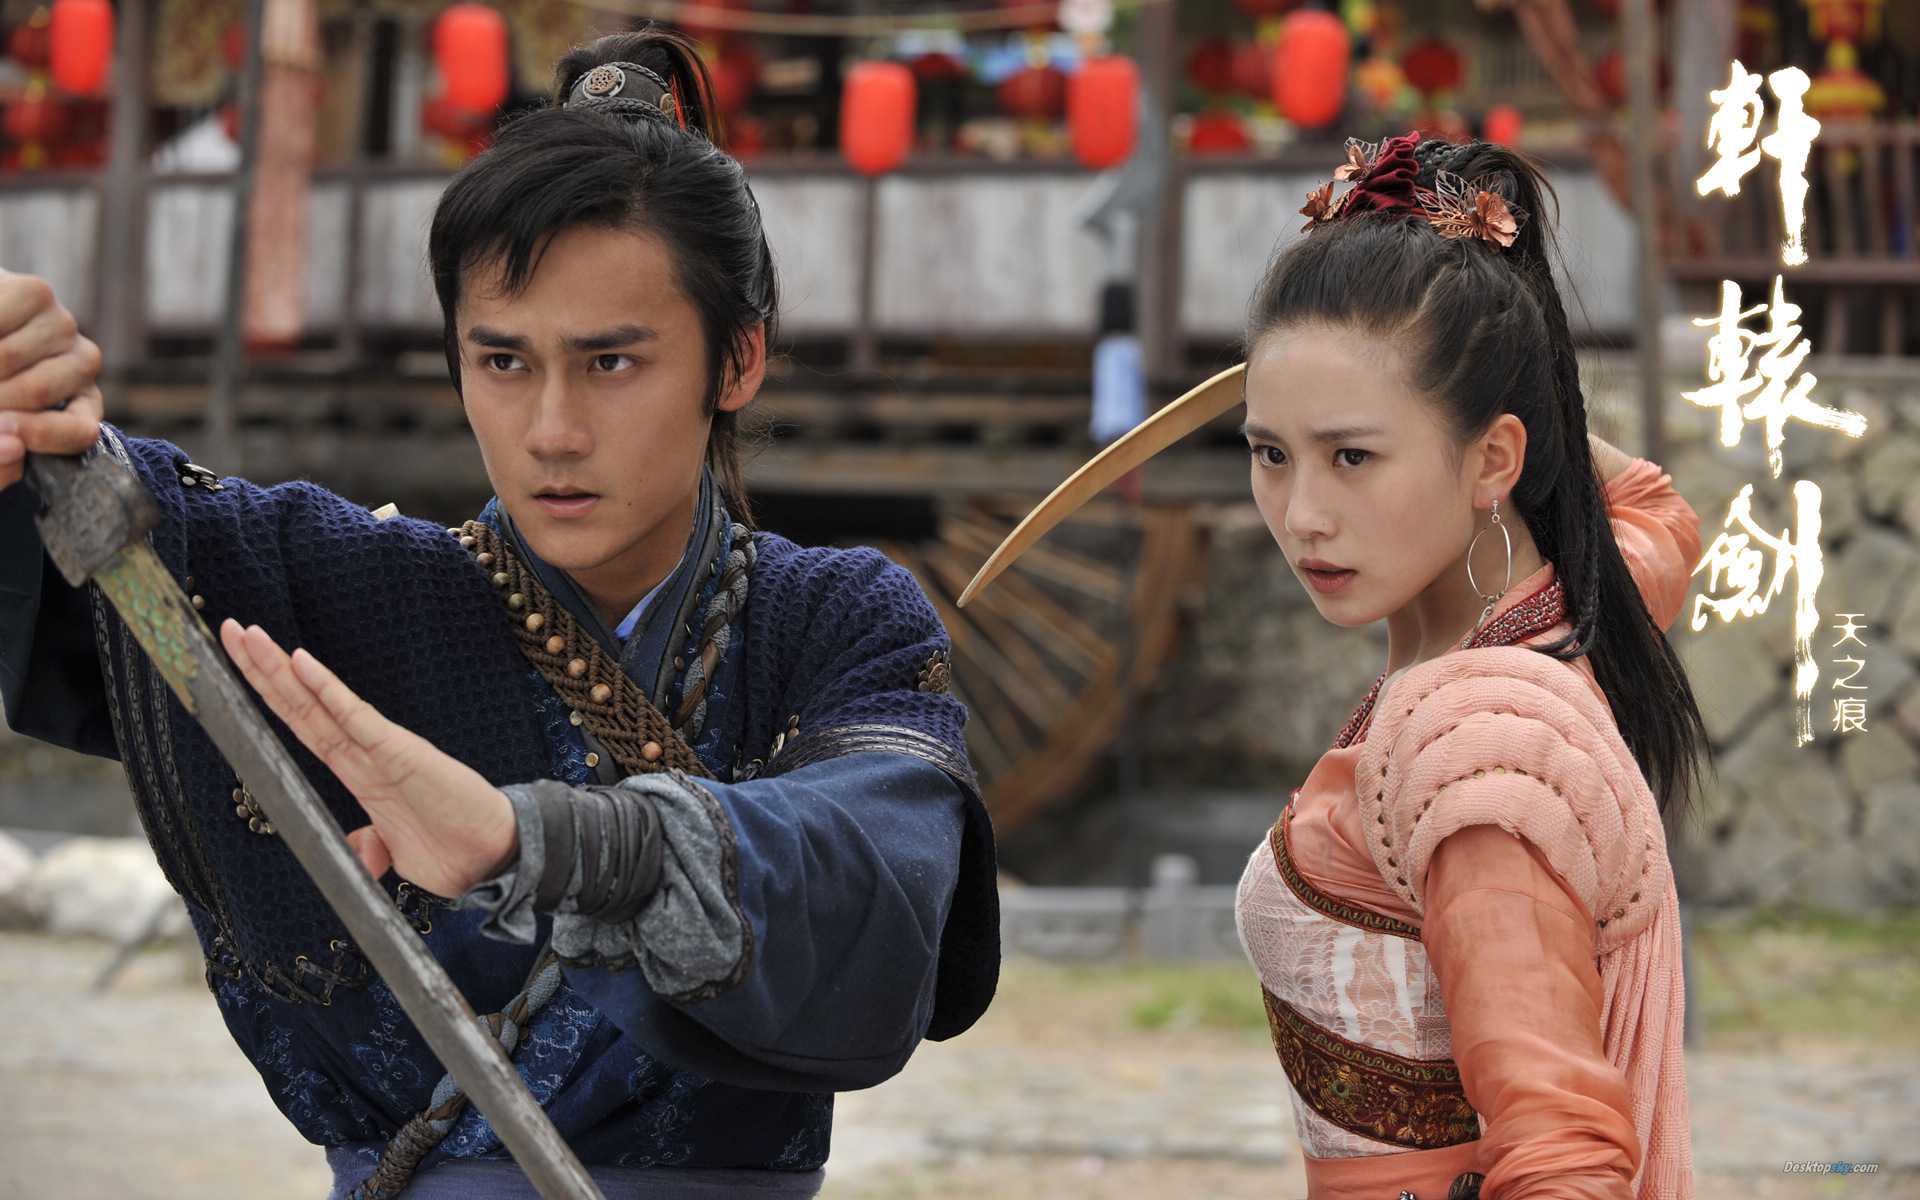 китайские фильмы дорамы фантастика исторические фото 22